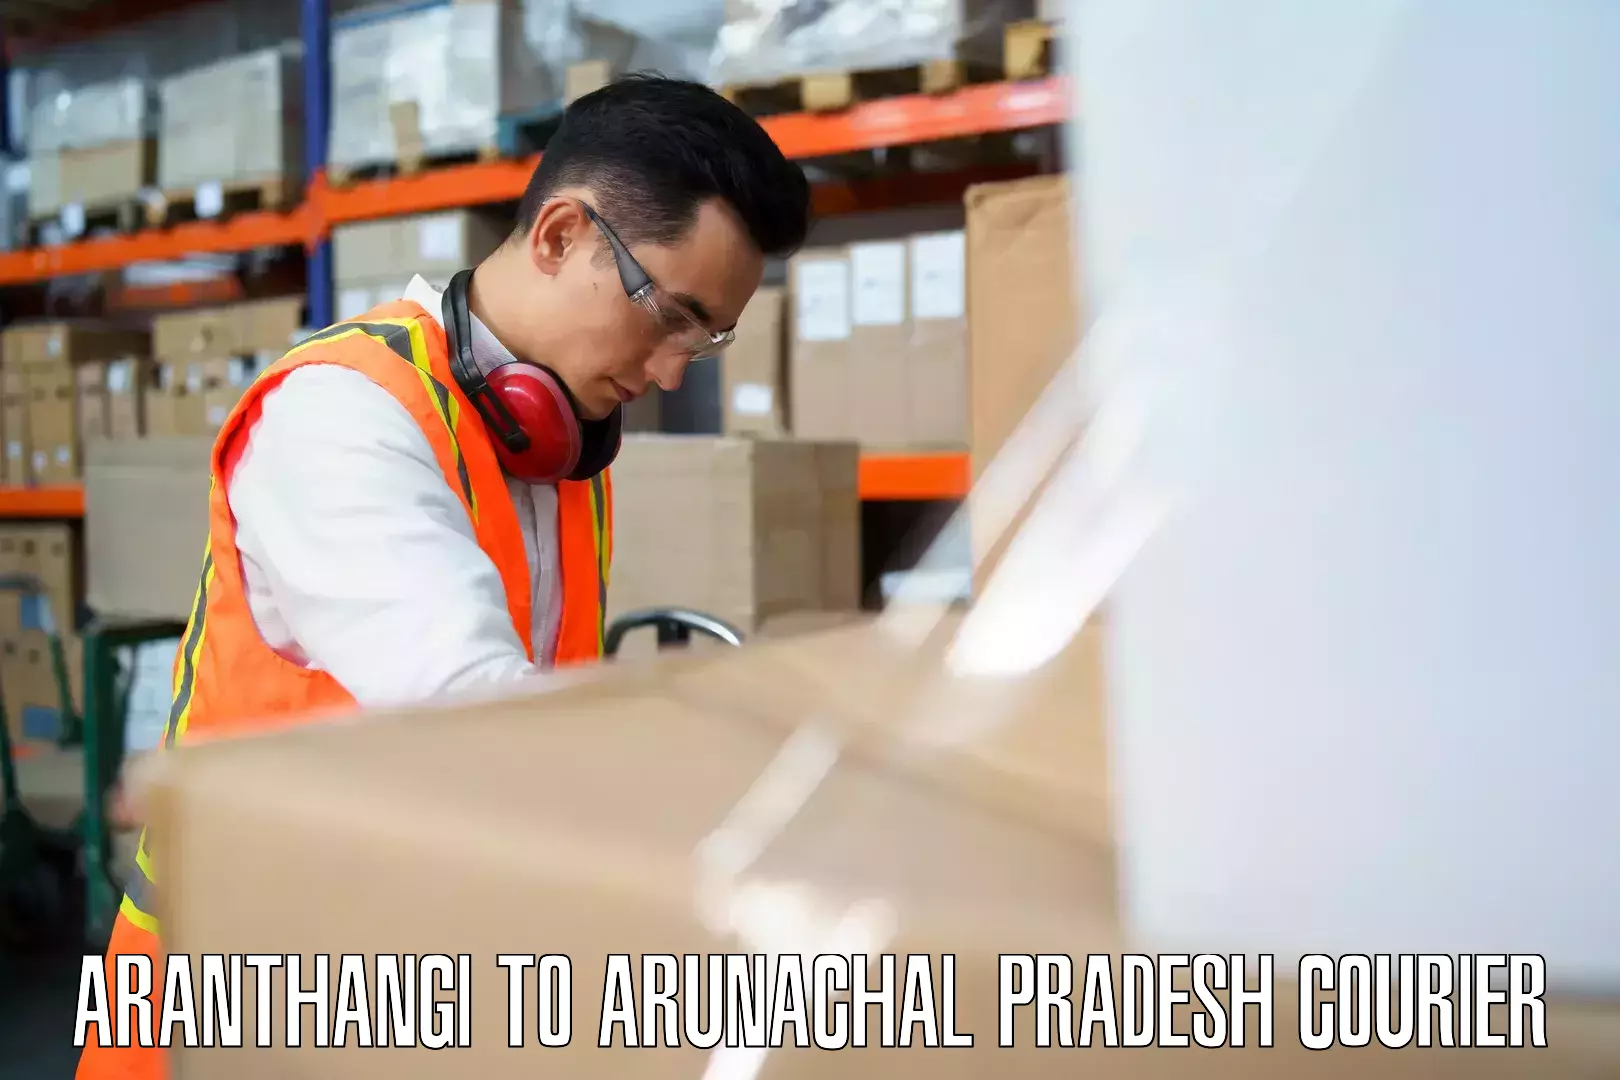 Emergency baggage service Aranthangi to Arunachal Pradesh